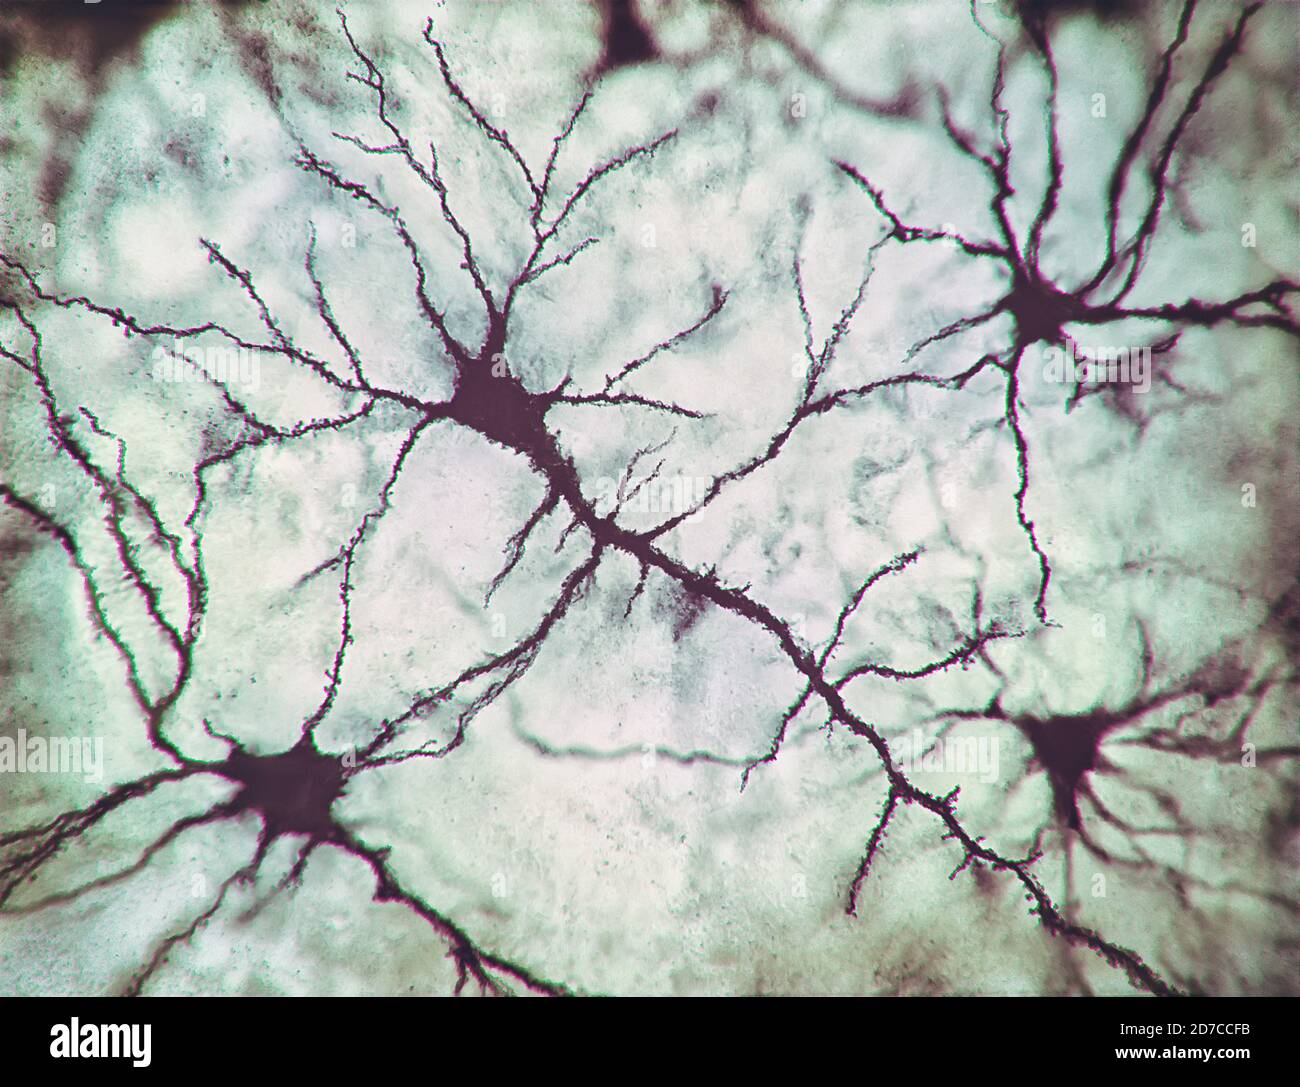 Illustration 2D, neurones et leurs connexions. Simulation photo microscopique du système nerveux humain. Banque D'Images